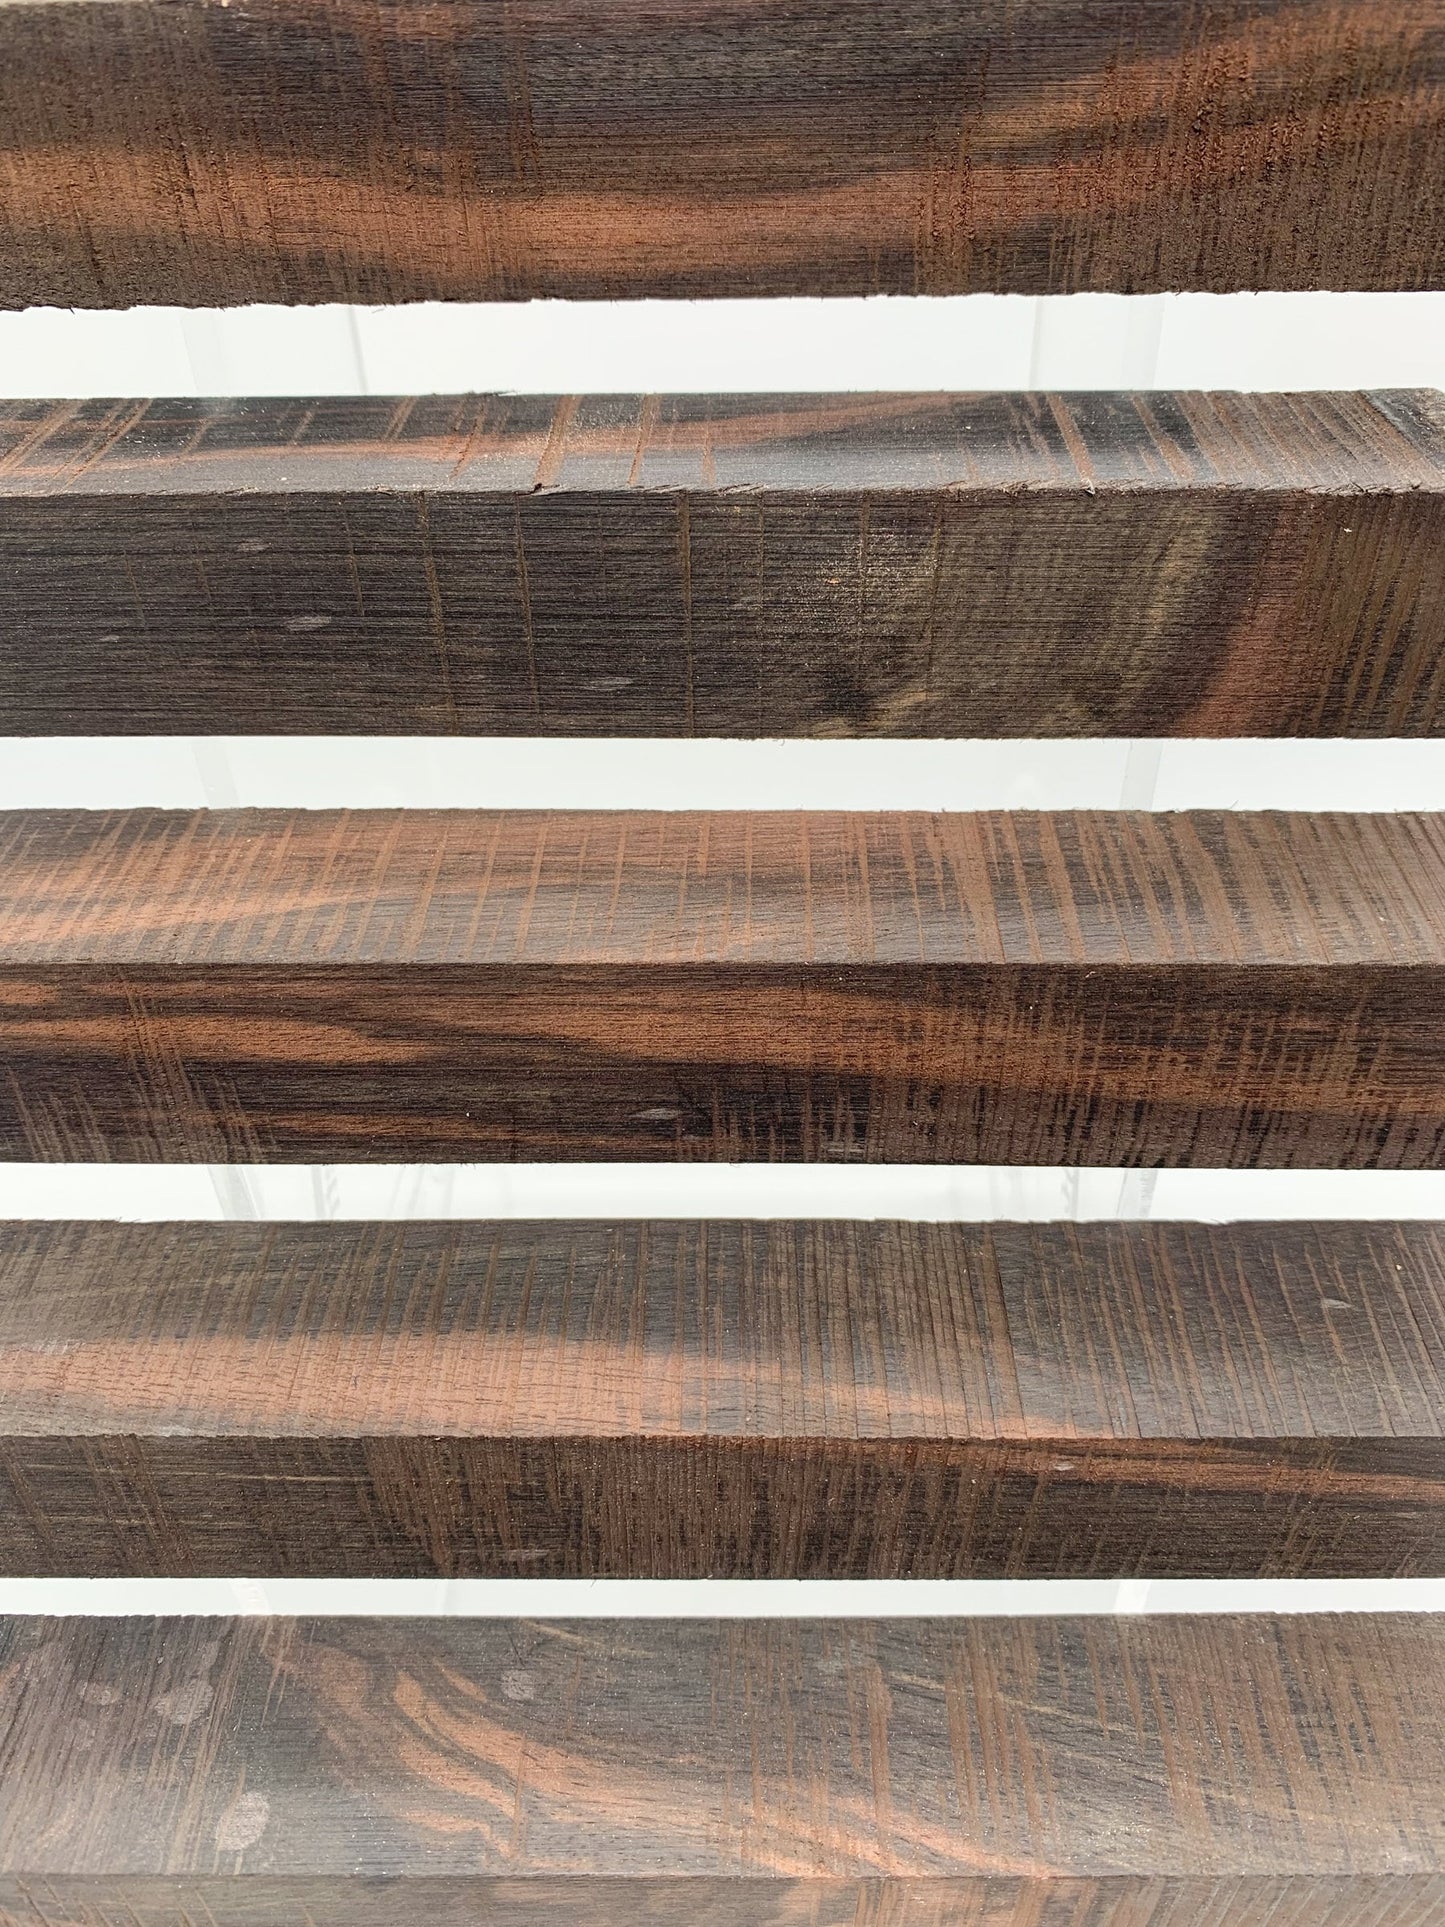 Indian Ebony Wood |  Wooden Pen Blanks